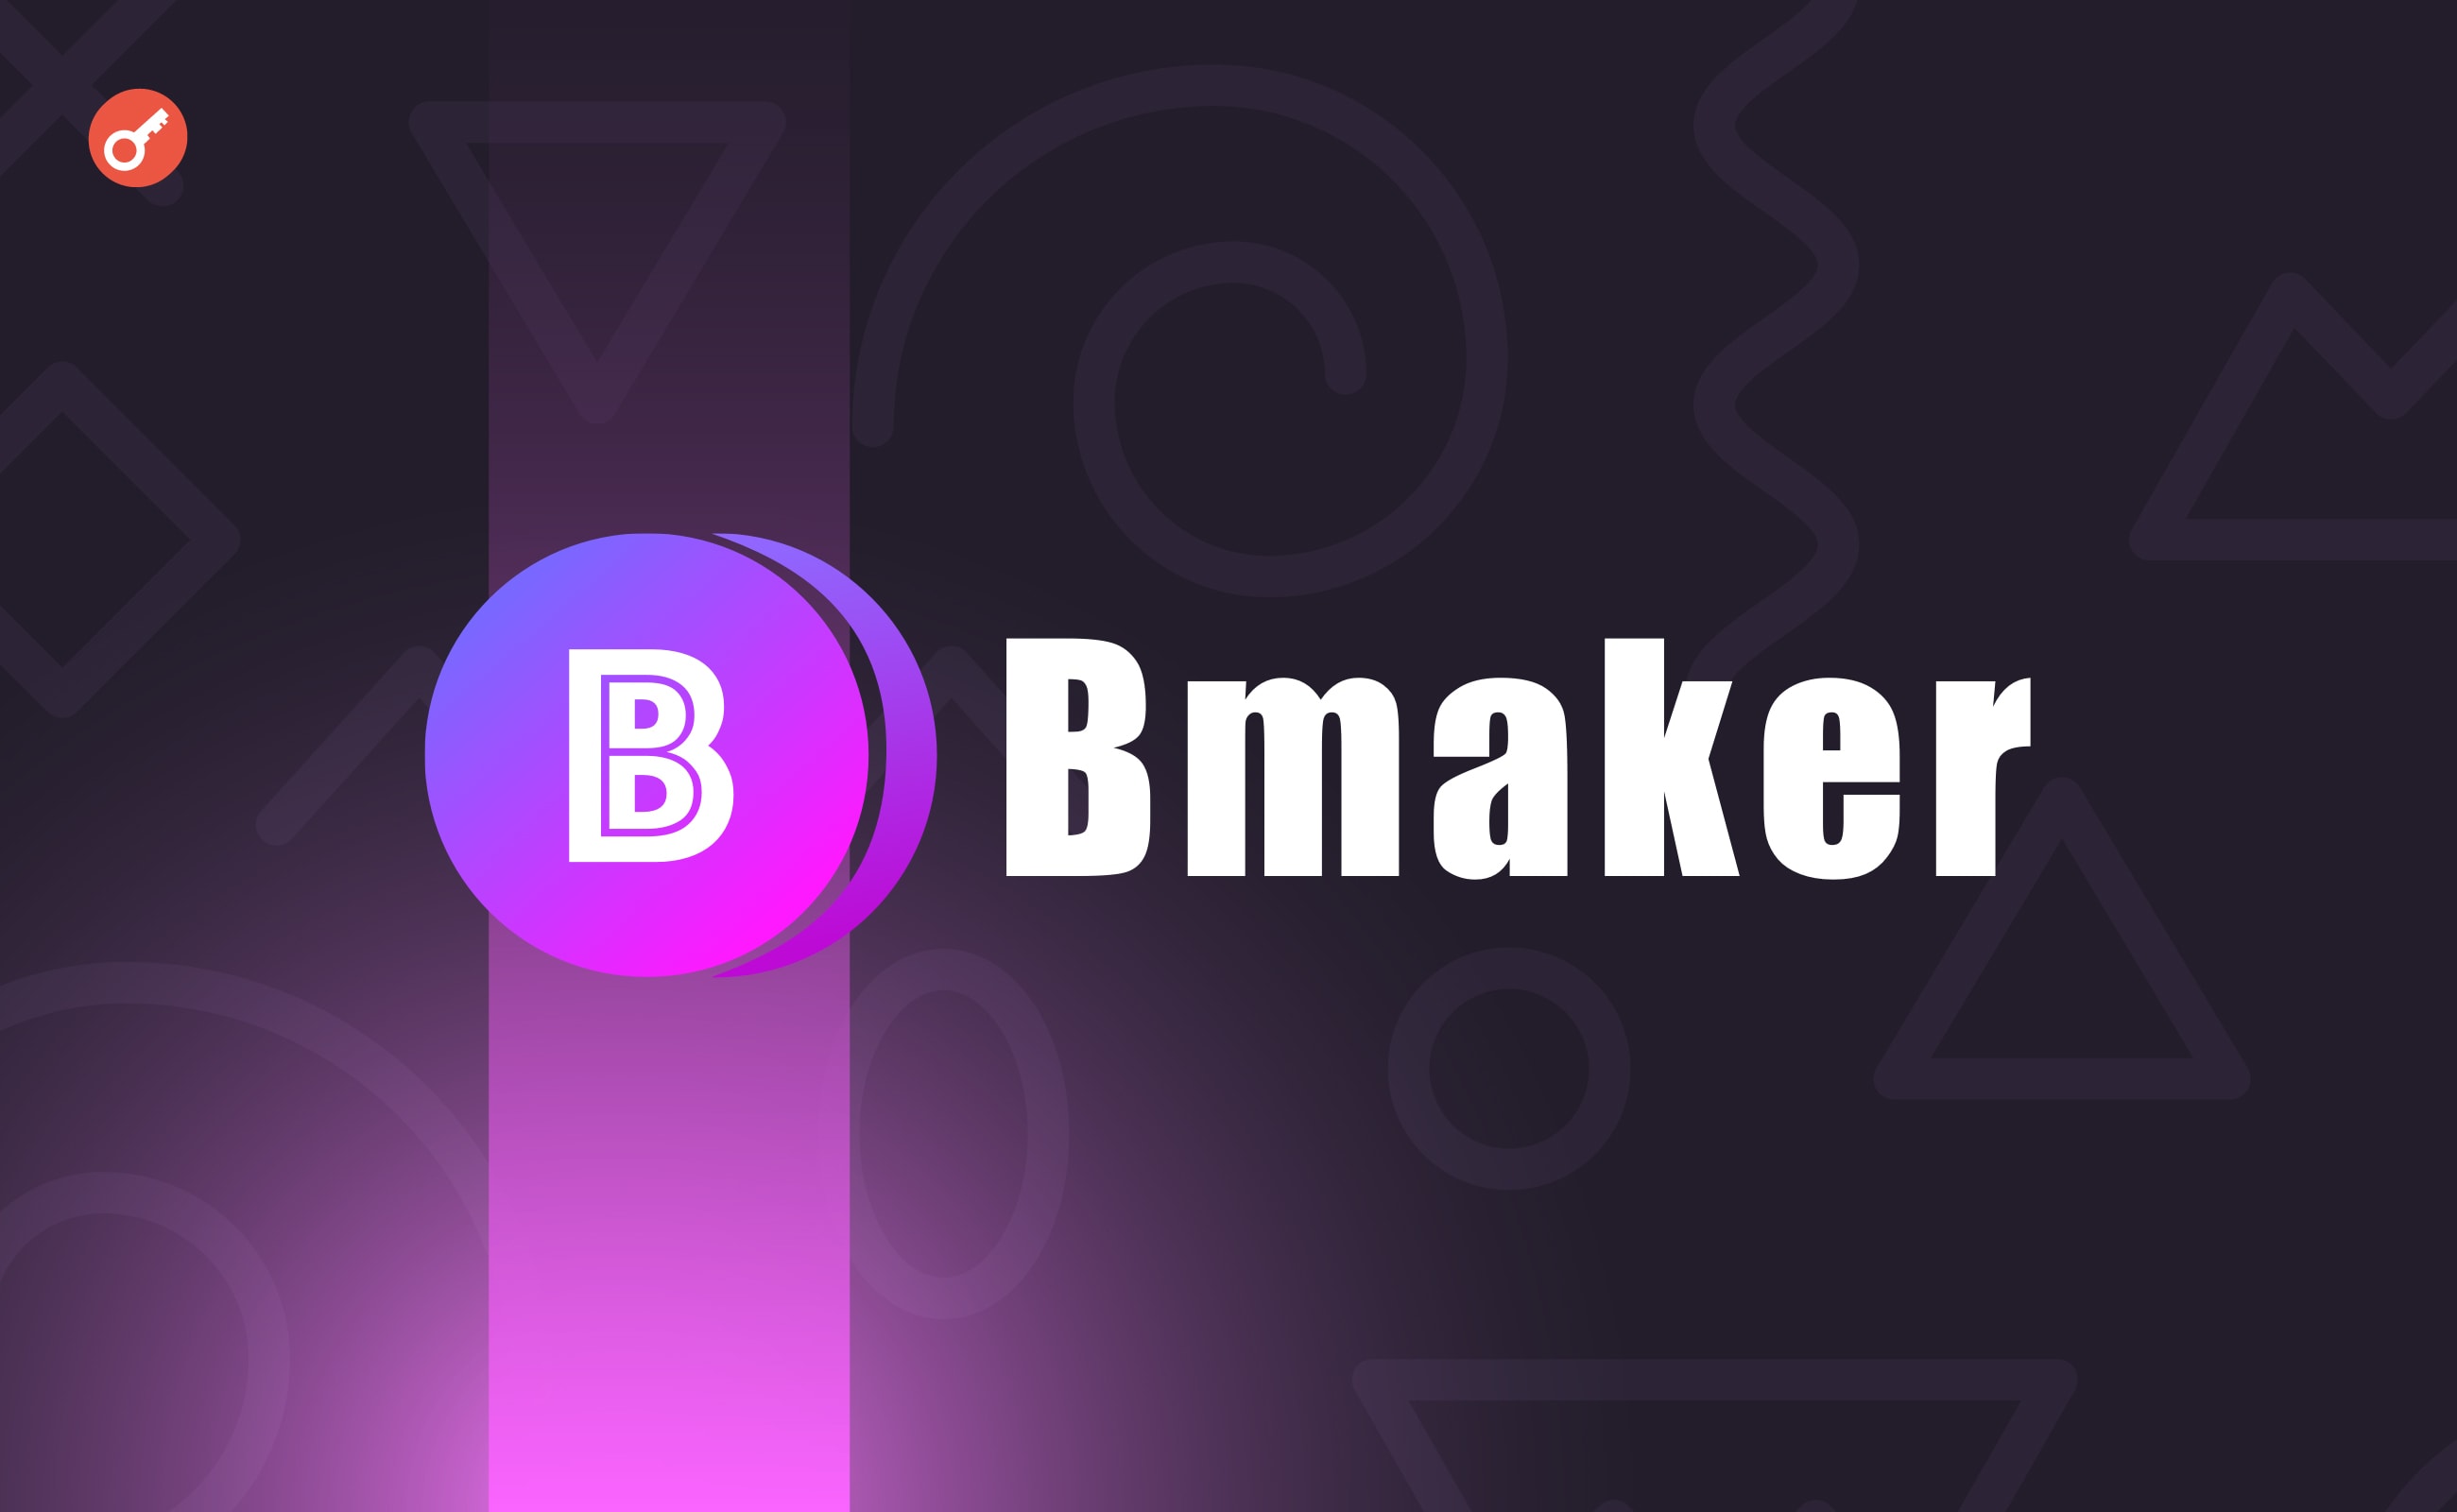 L2-протокол Bmaker залучив $1,2 млн інвестицій. Головний колаж новини.